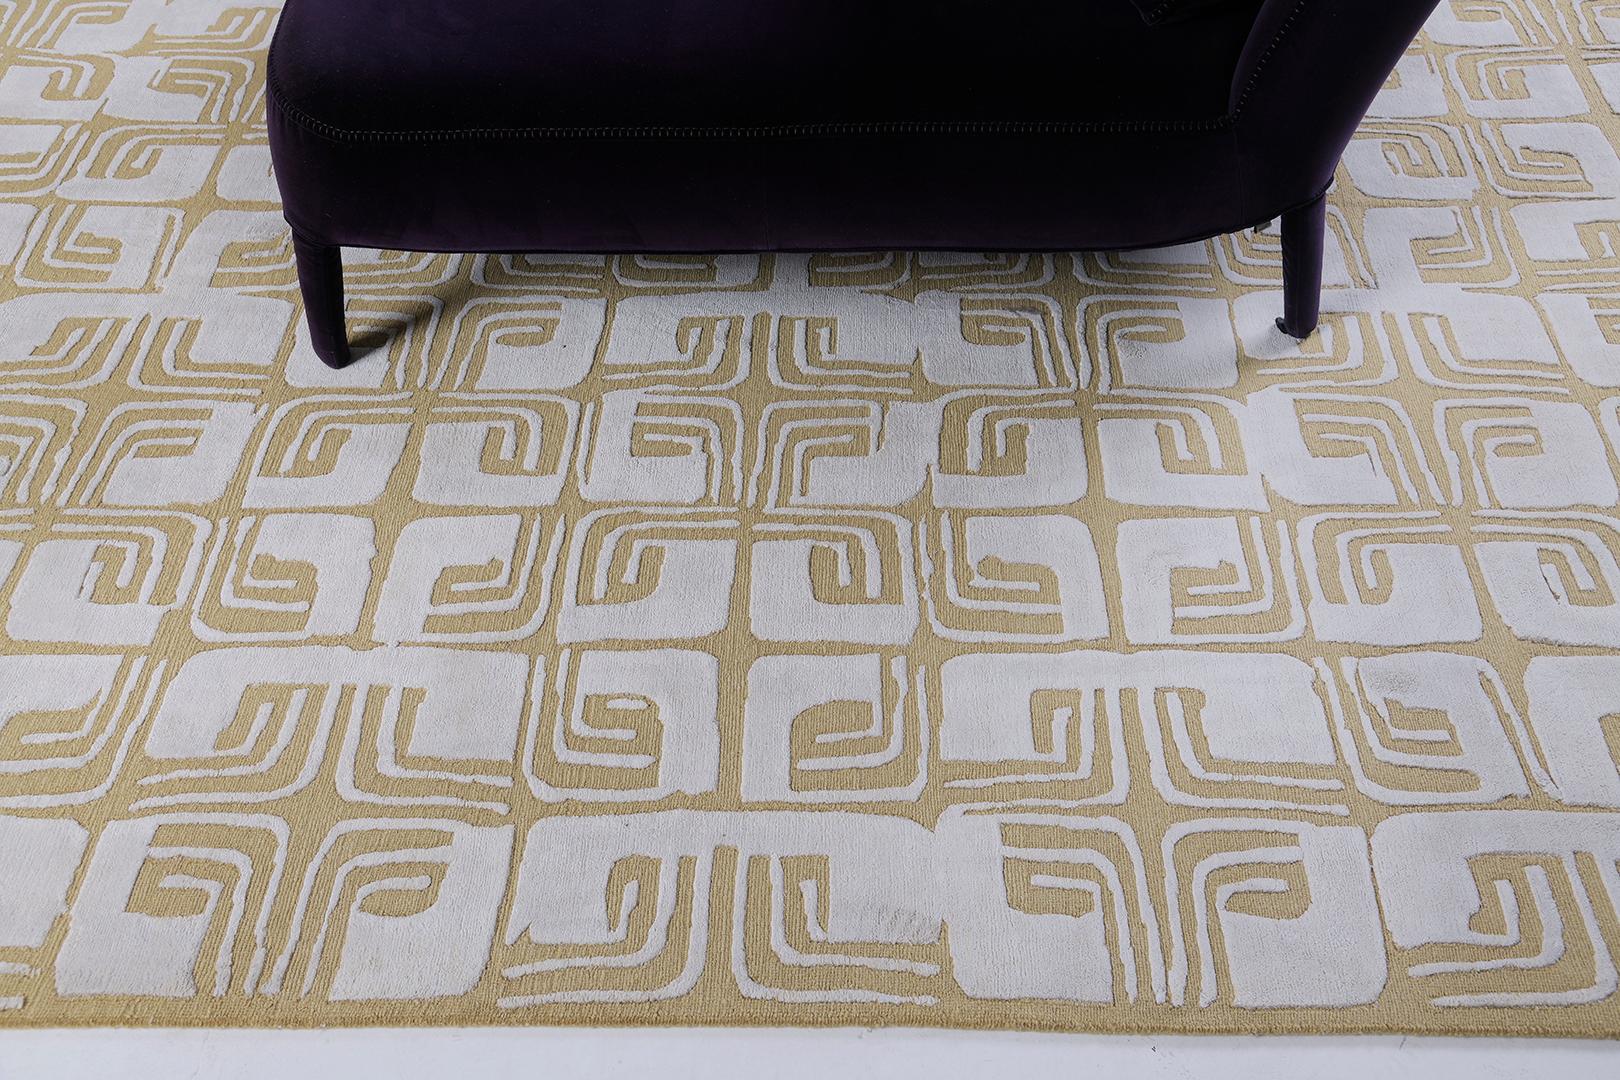 Ein blumiger Labyrinthrapport aus silbern schimmernder Seide und goldener Wolle. Die Konstruktion des Anika-Teppichs vereint eine Schlingenstruktur mit einer üppig anzufühlenden Seide.

Teppich Nummer
29755
Größe
9' 0